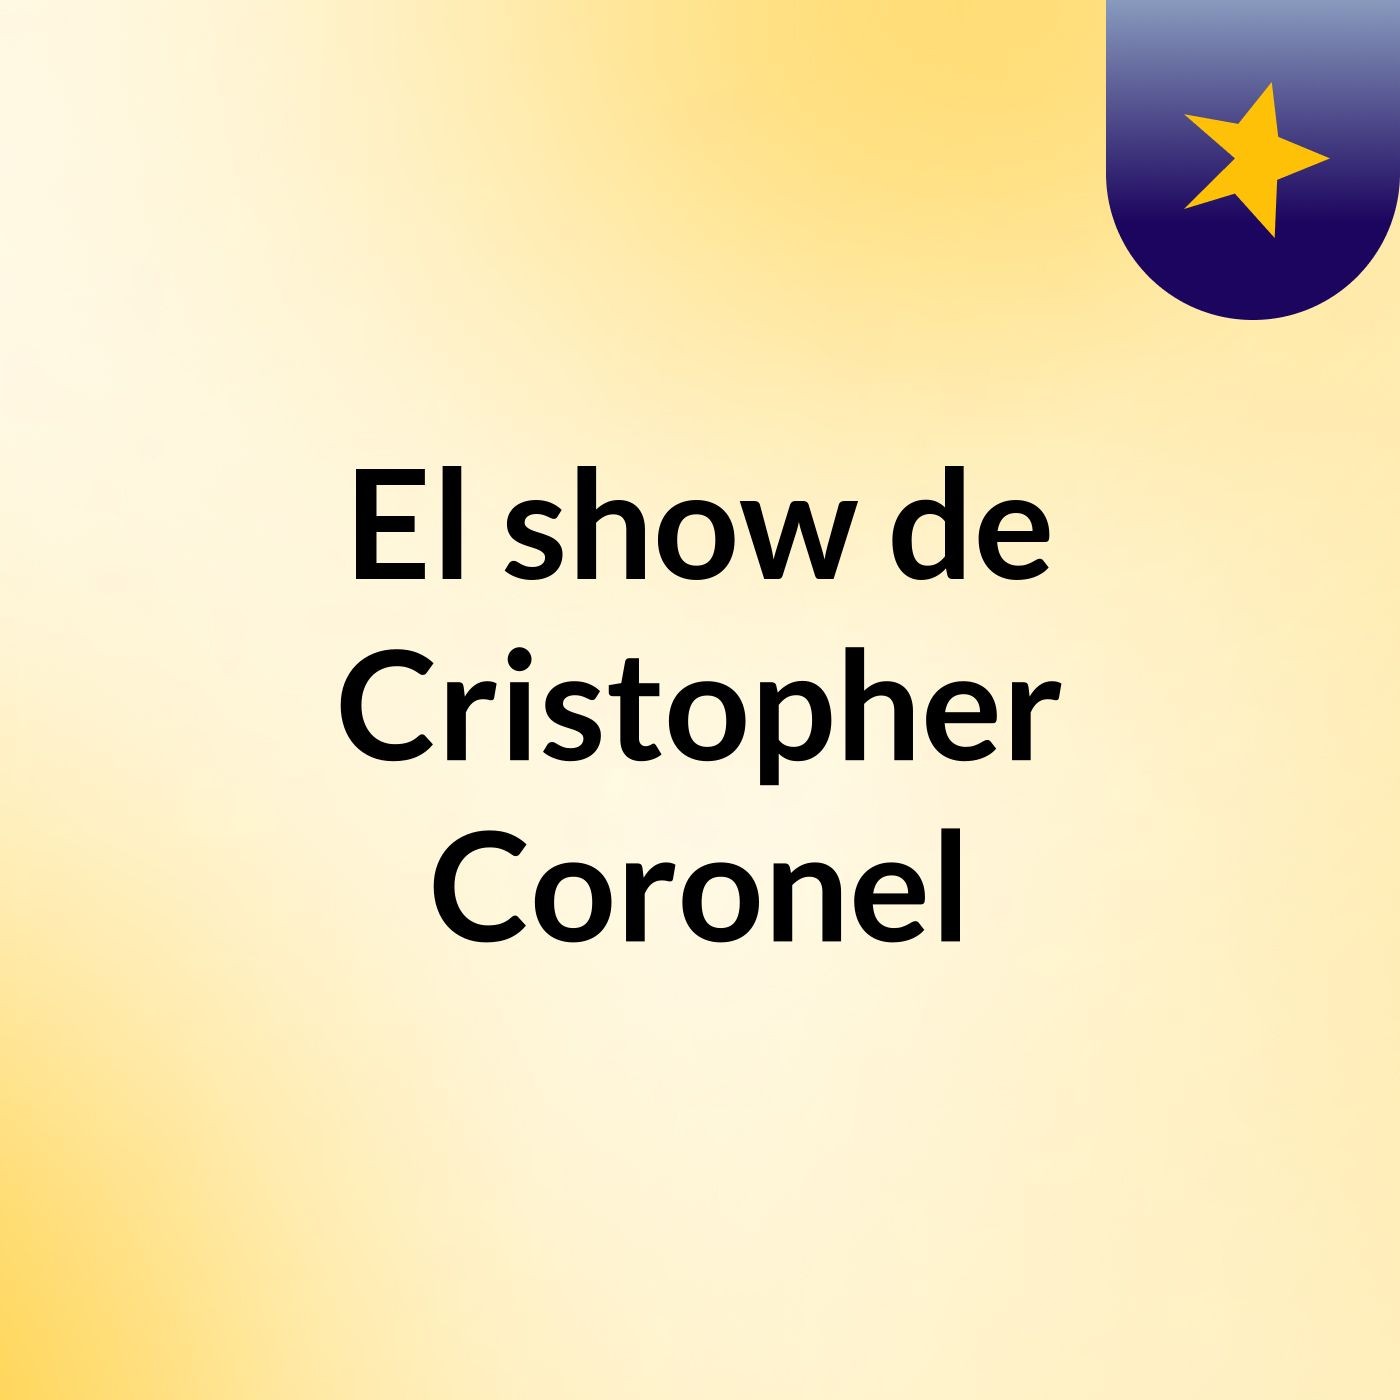 El show de Cristopher Coronel